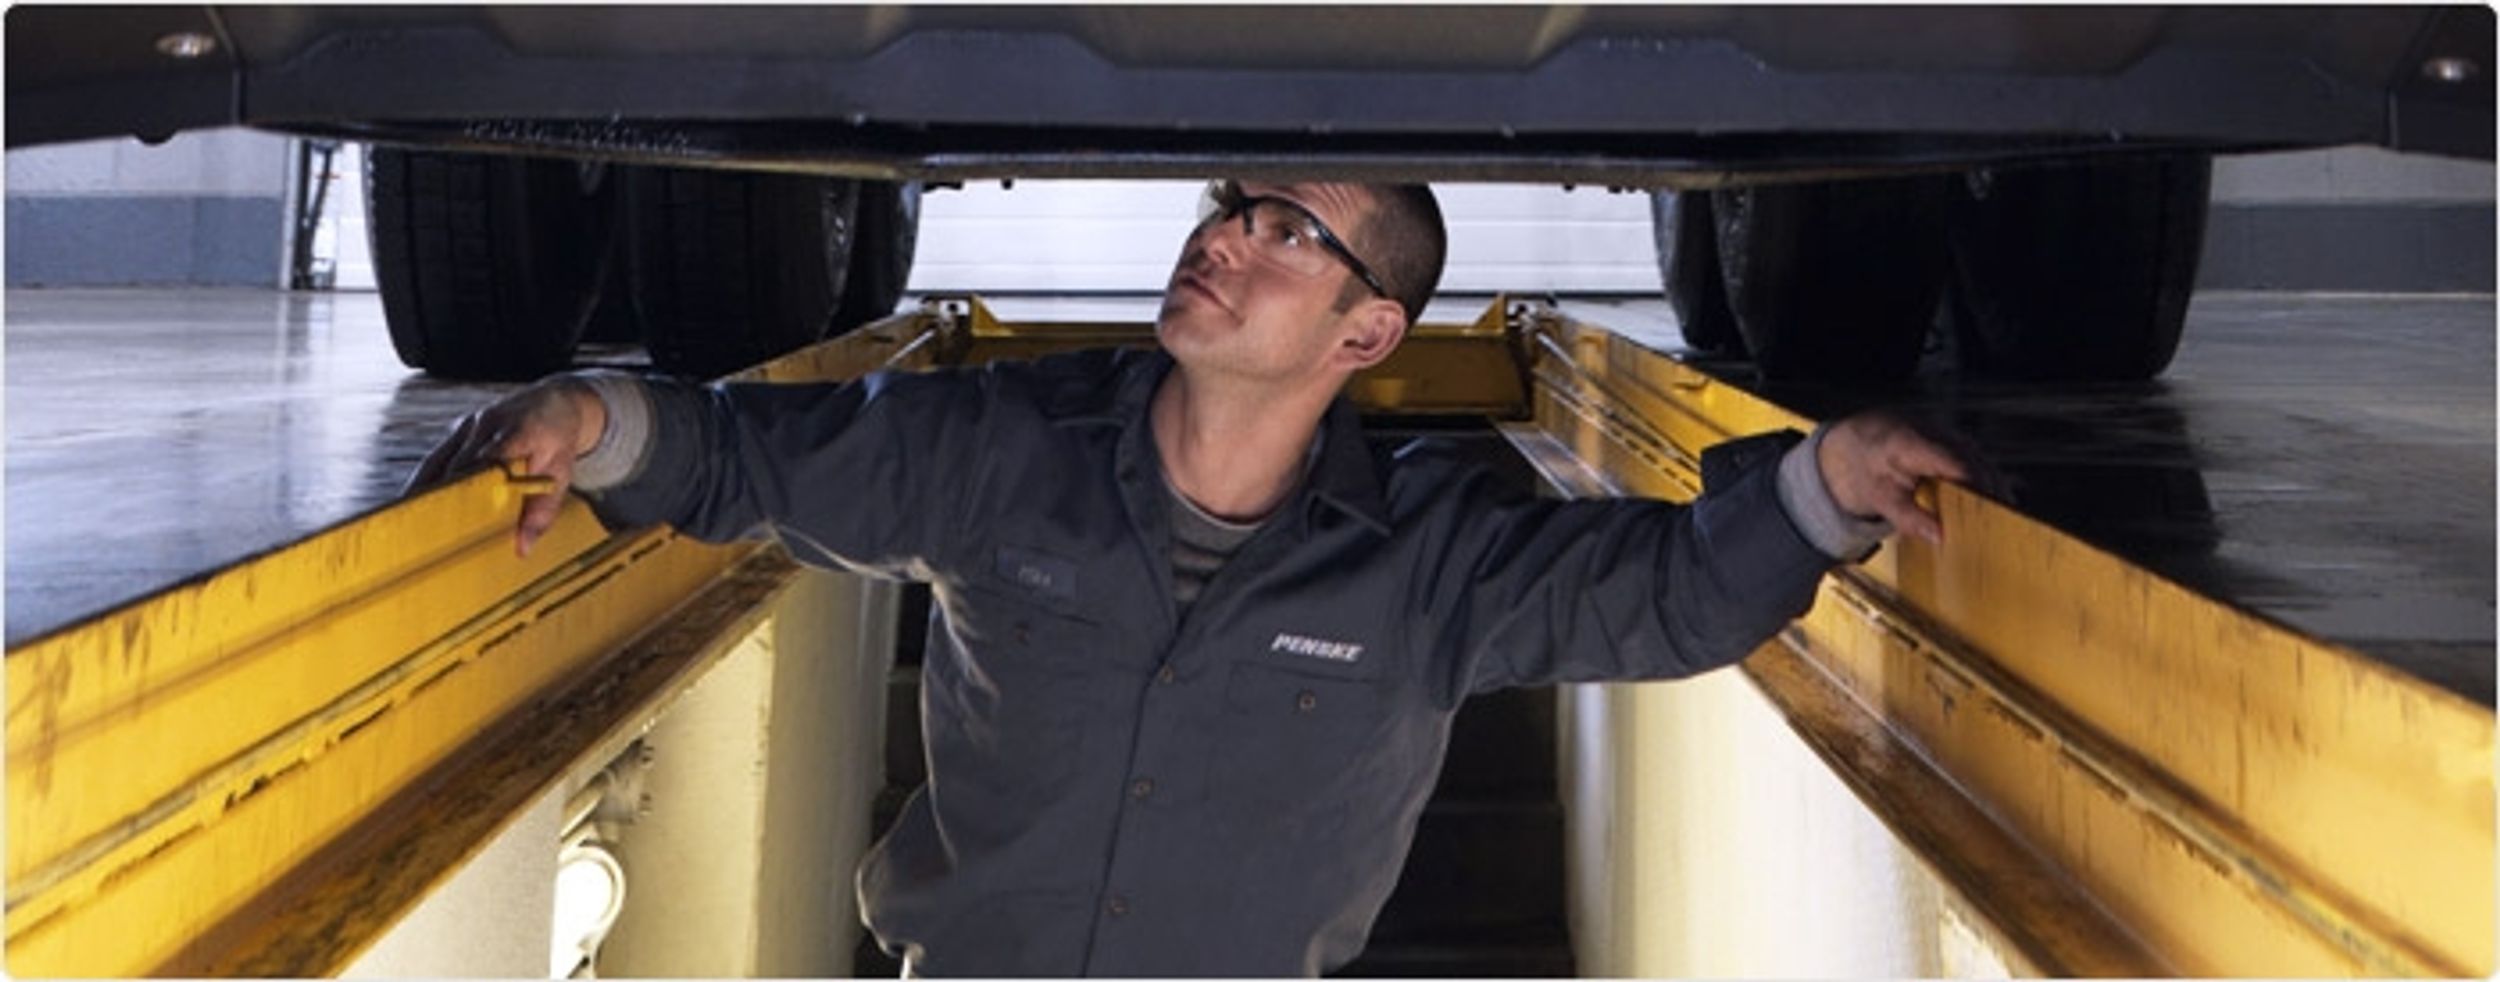 Penske Seeking Diesel Technicians